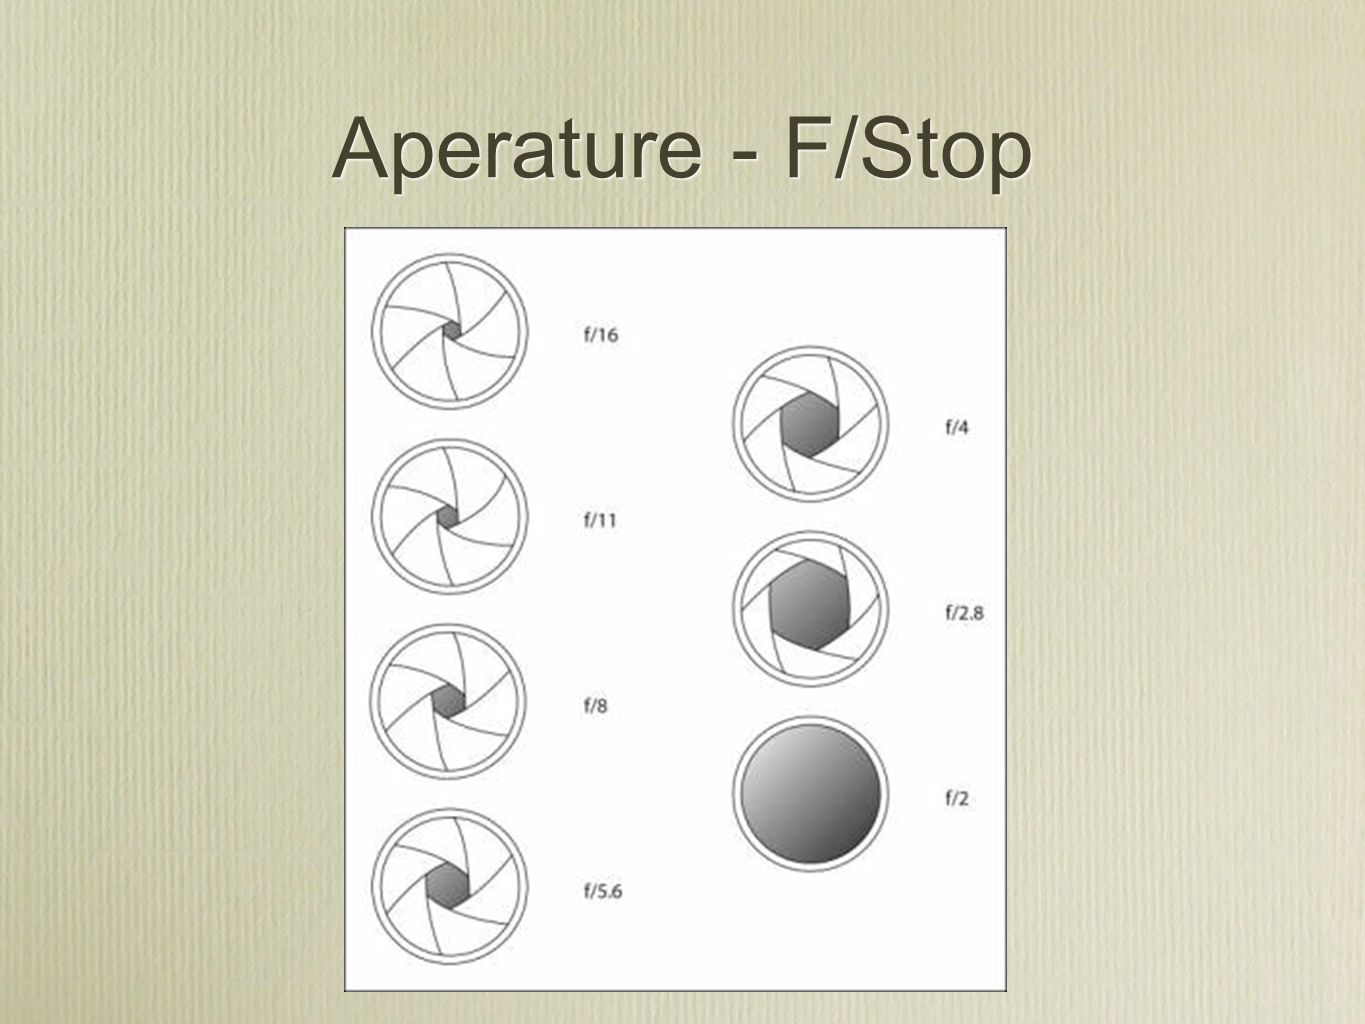 Aperature - F/Stop